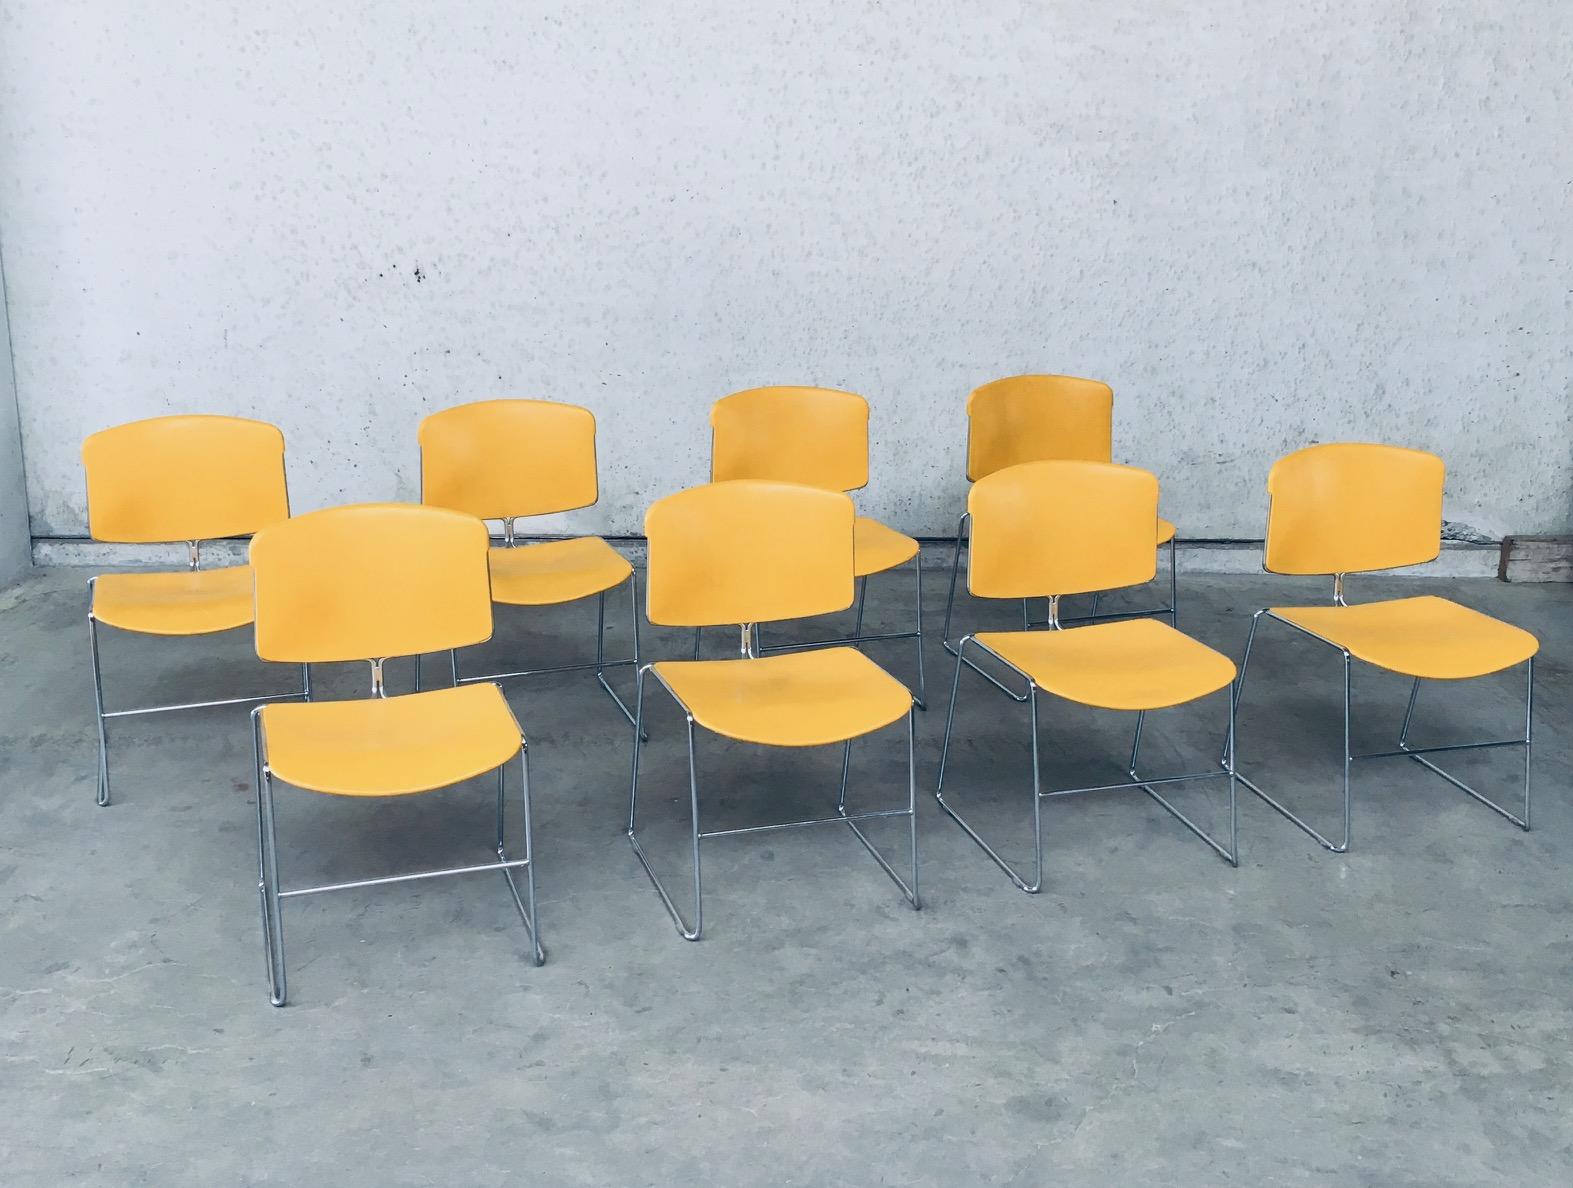 Vintage By MAX STACKER Conference / Office Chair set of 8 by Steelcase Strafor Edition, made in the USA 1970's / 80's. Siège et dossier en plastique jaune sur une structure en métal chromé. Toutes les chaises sont patinées avec des traces de leur